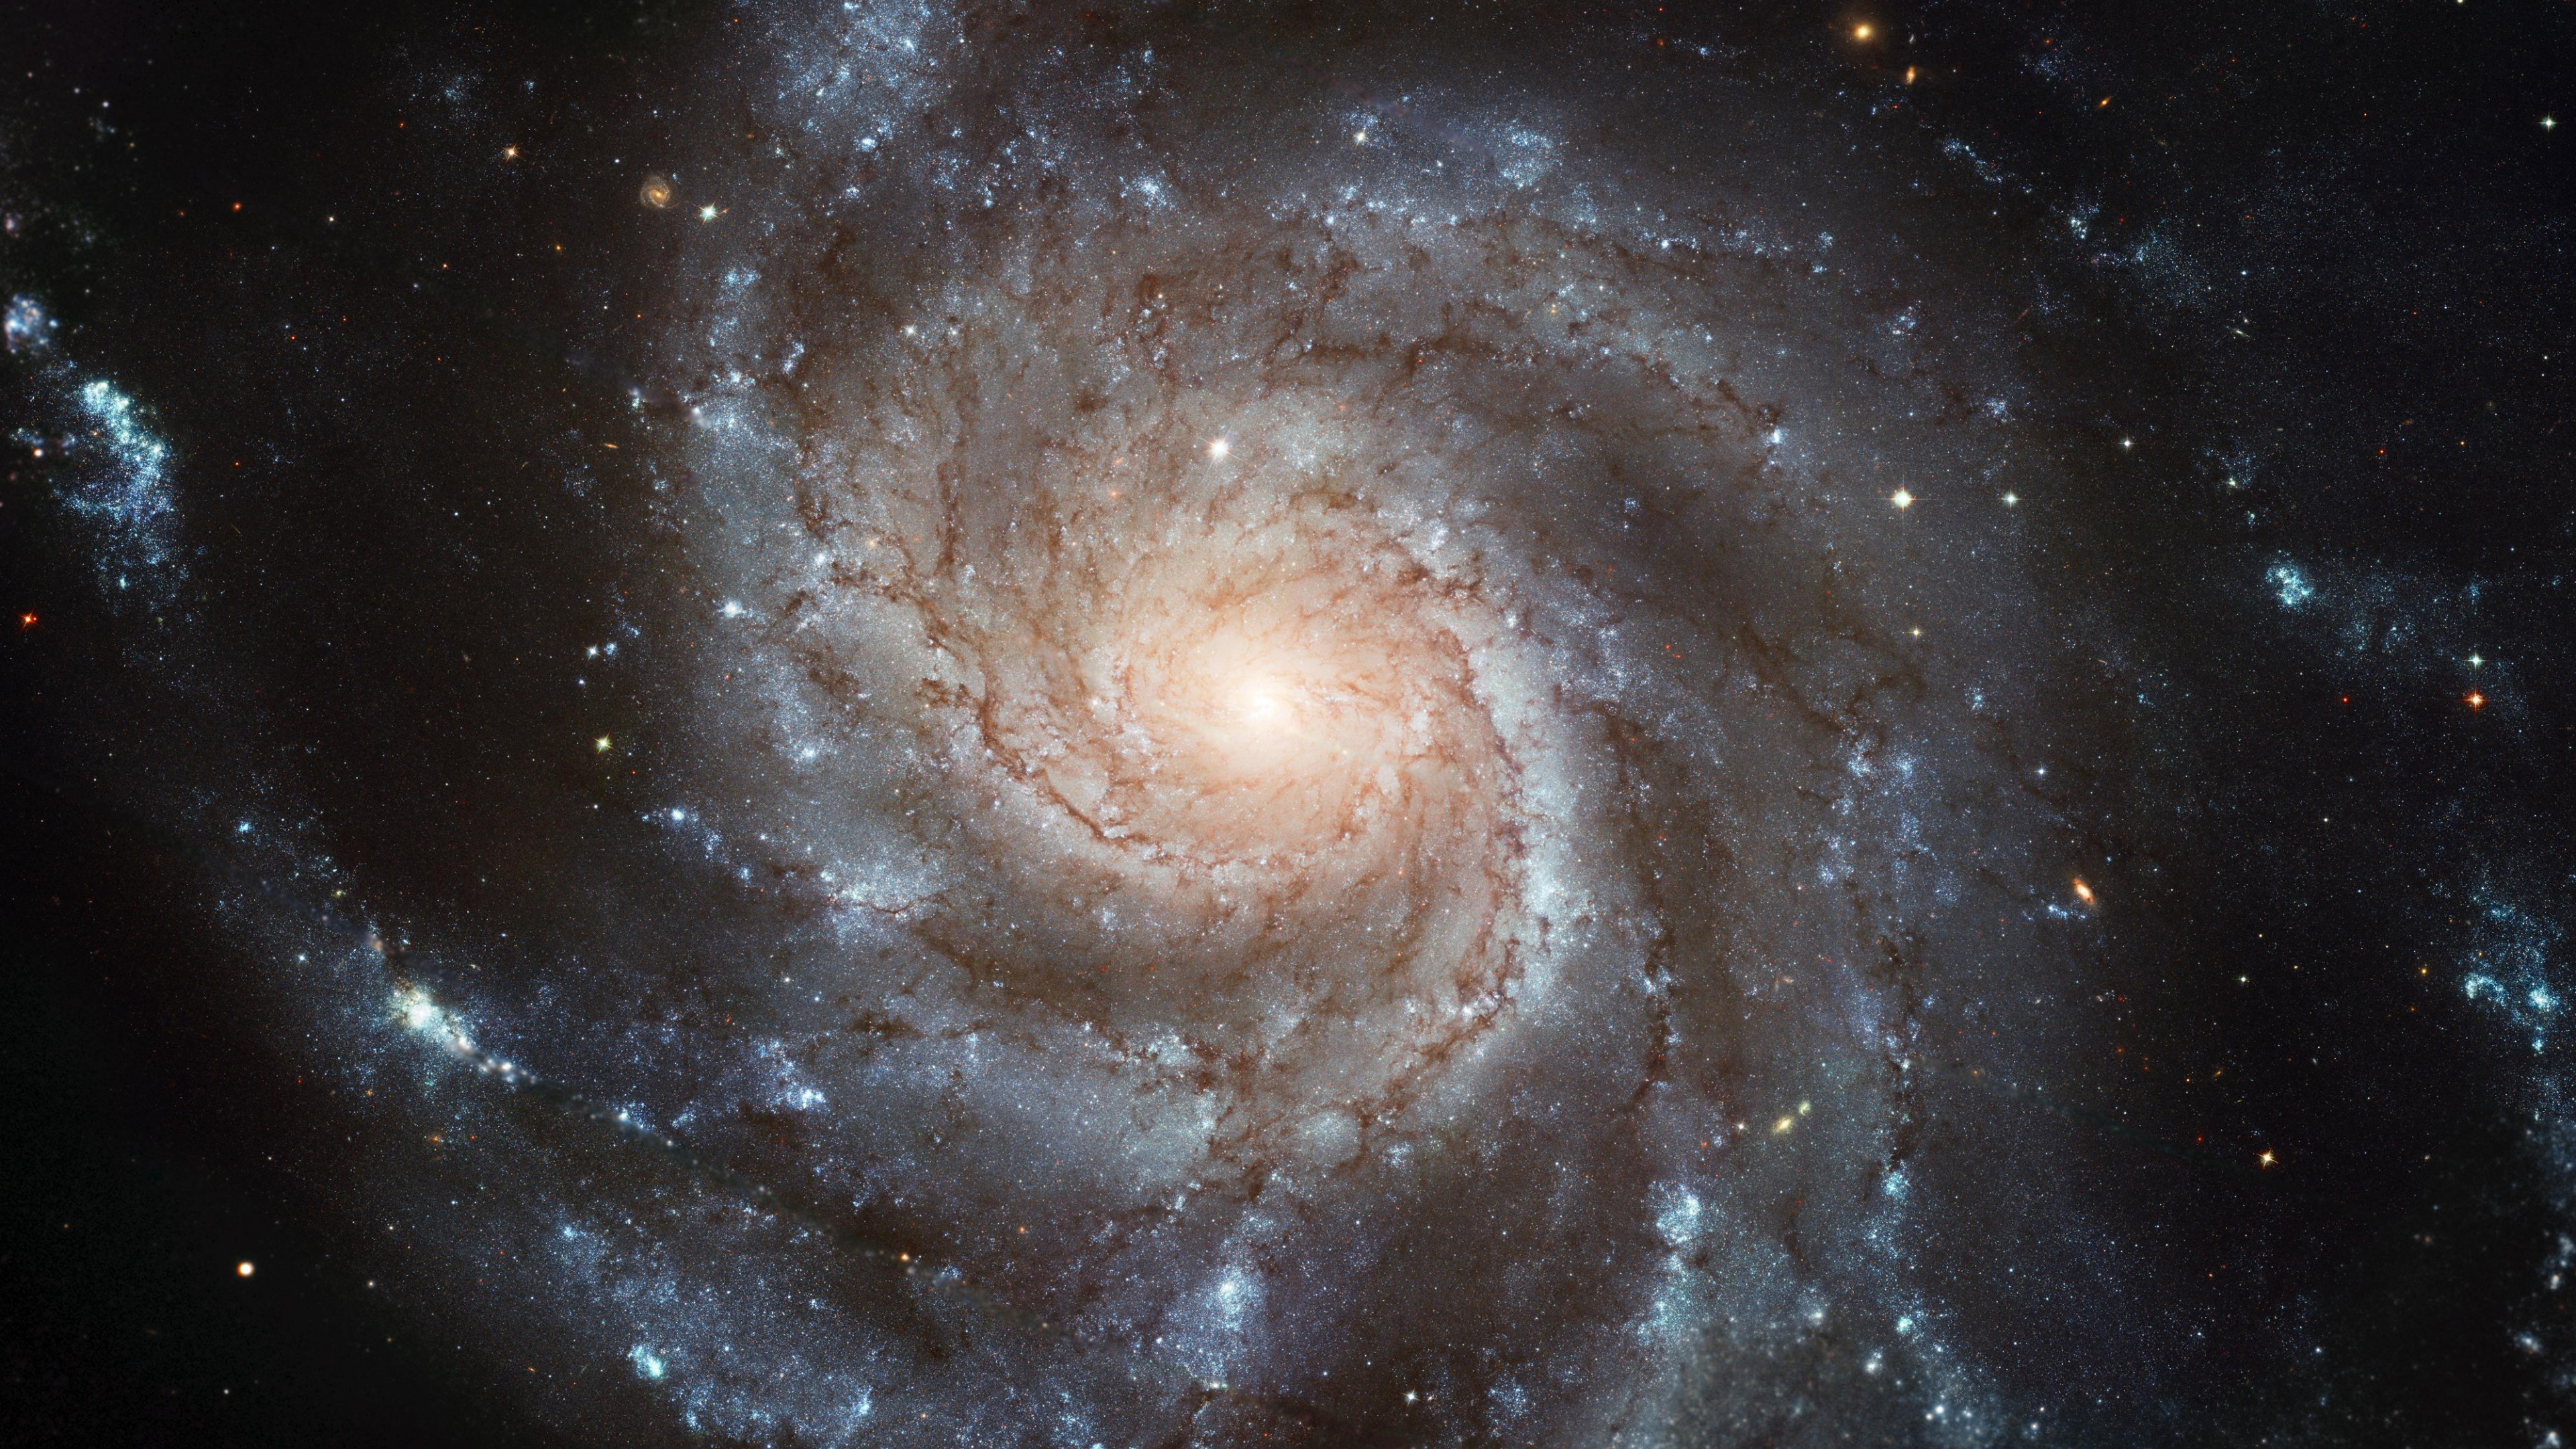 螺旋星系, 哈勃太空望远镜, 天文学, 天文学对象, 宇宙 壁纸 3840x2160 允许